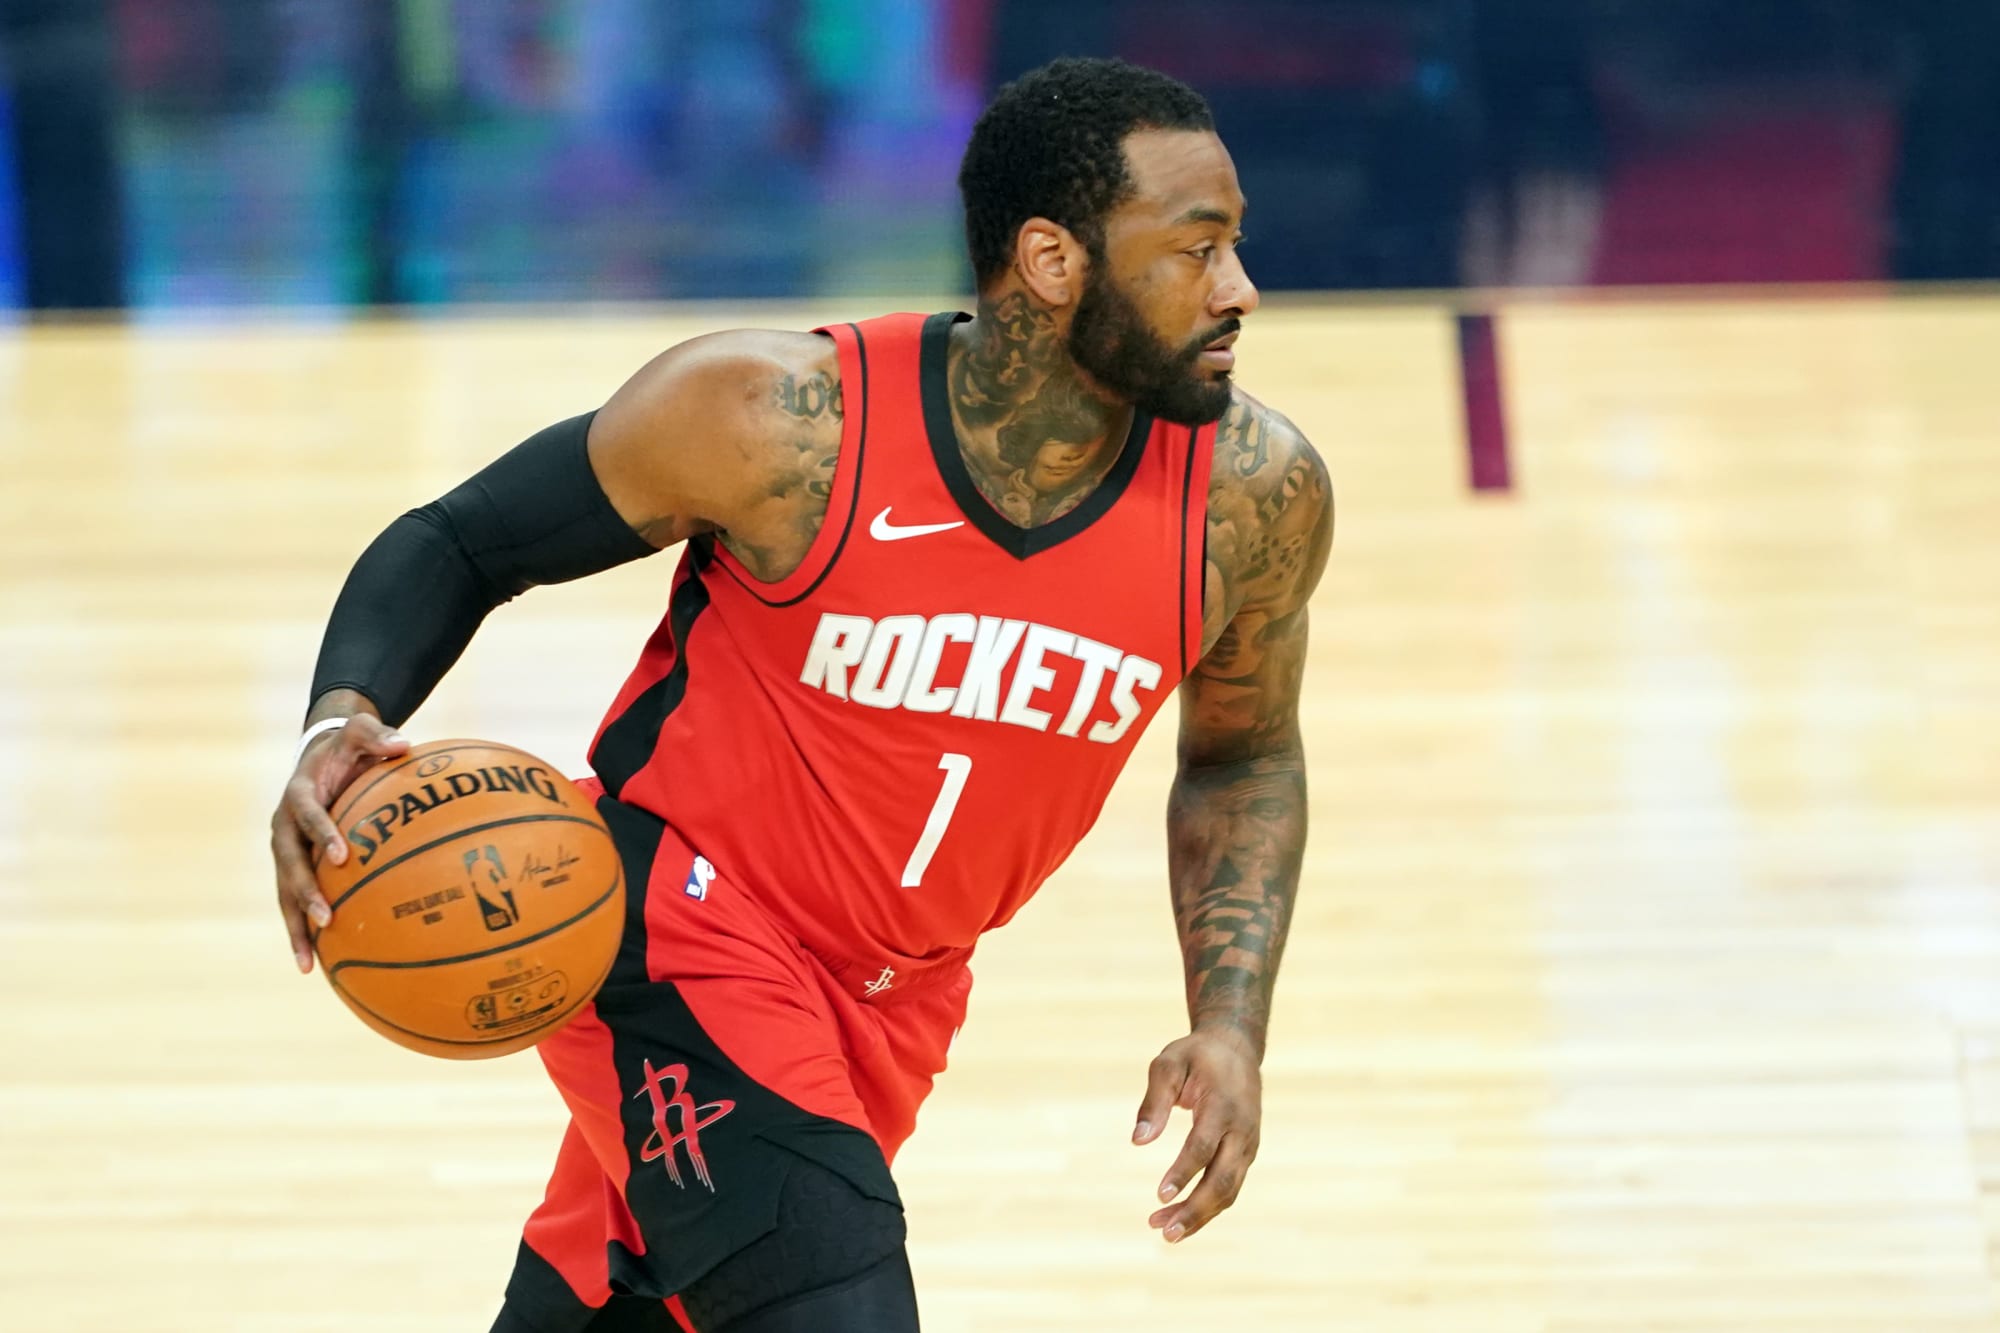 Houston Rockets' John Wall likely done for the season